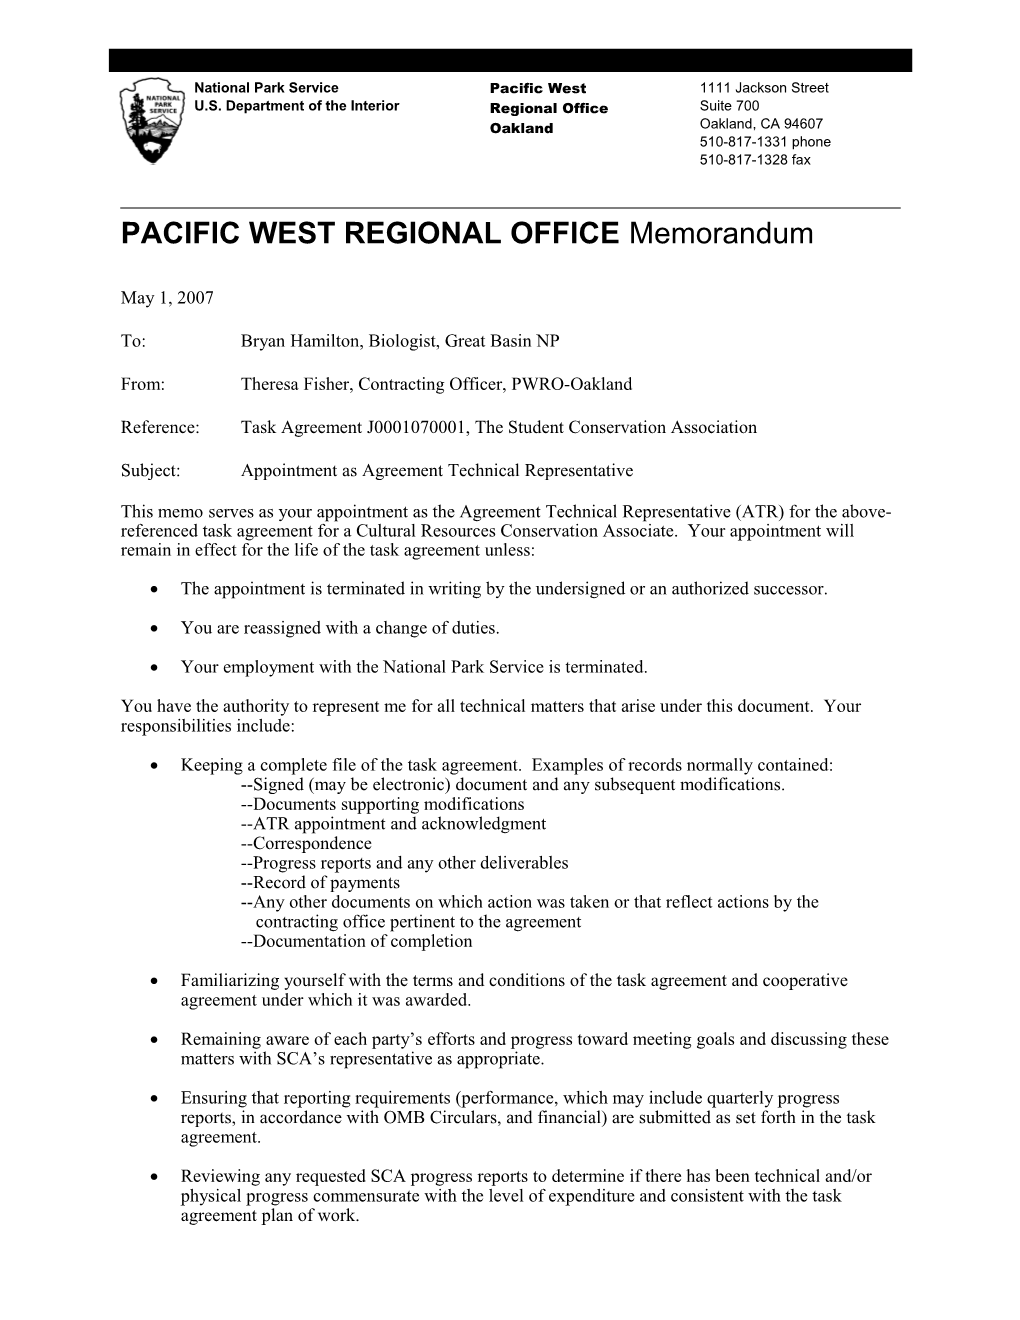 PACIFIC WEST REGIONAL OFFICE Memorandum